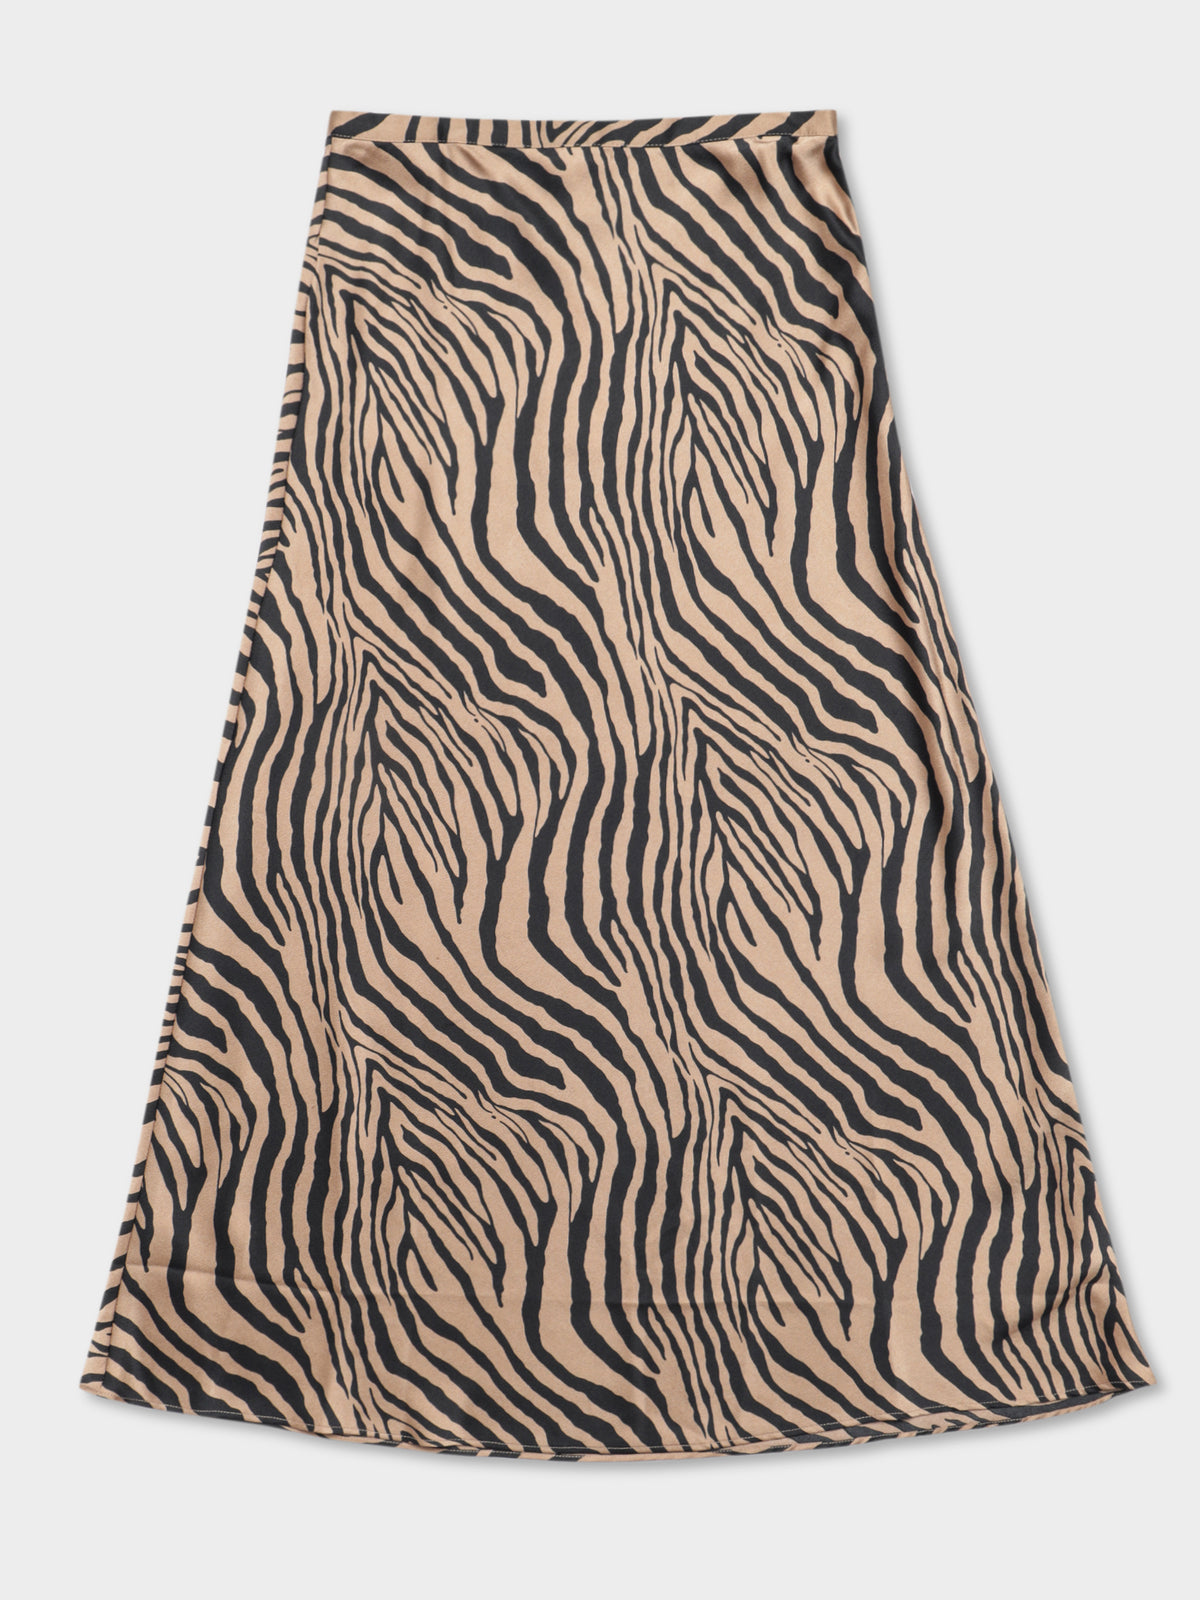 Leonie Satin Skirt in Zebra